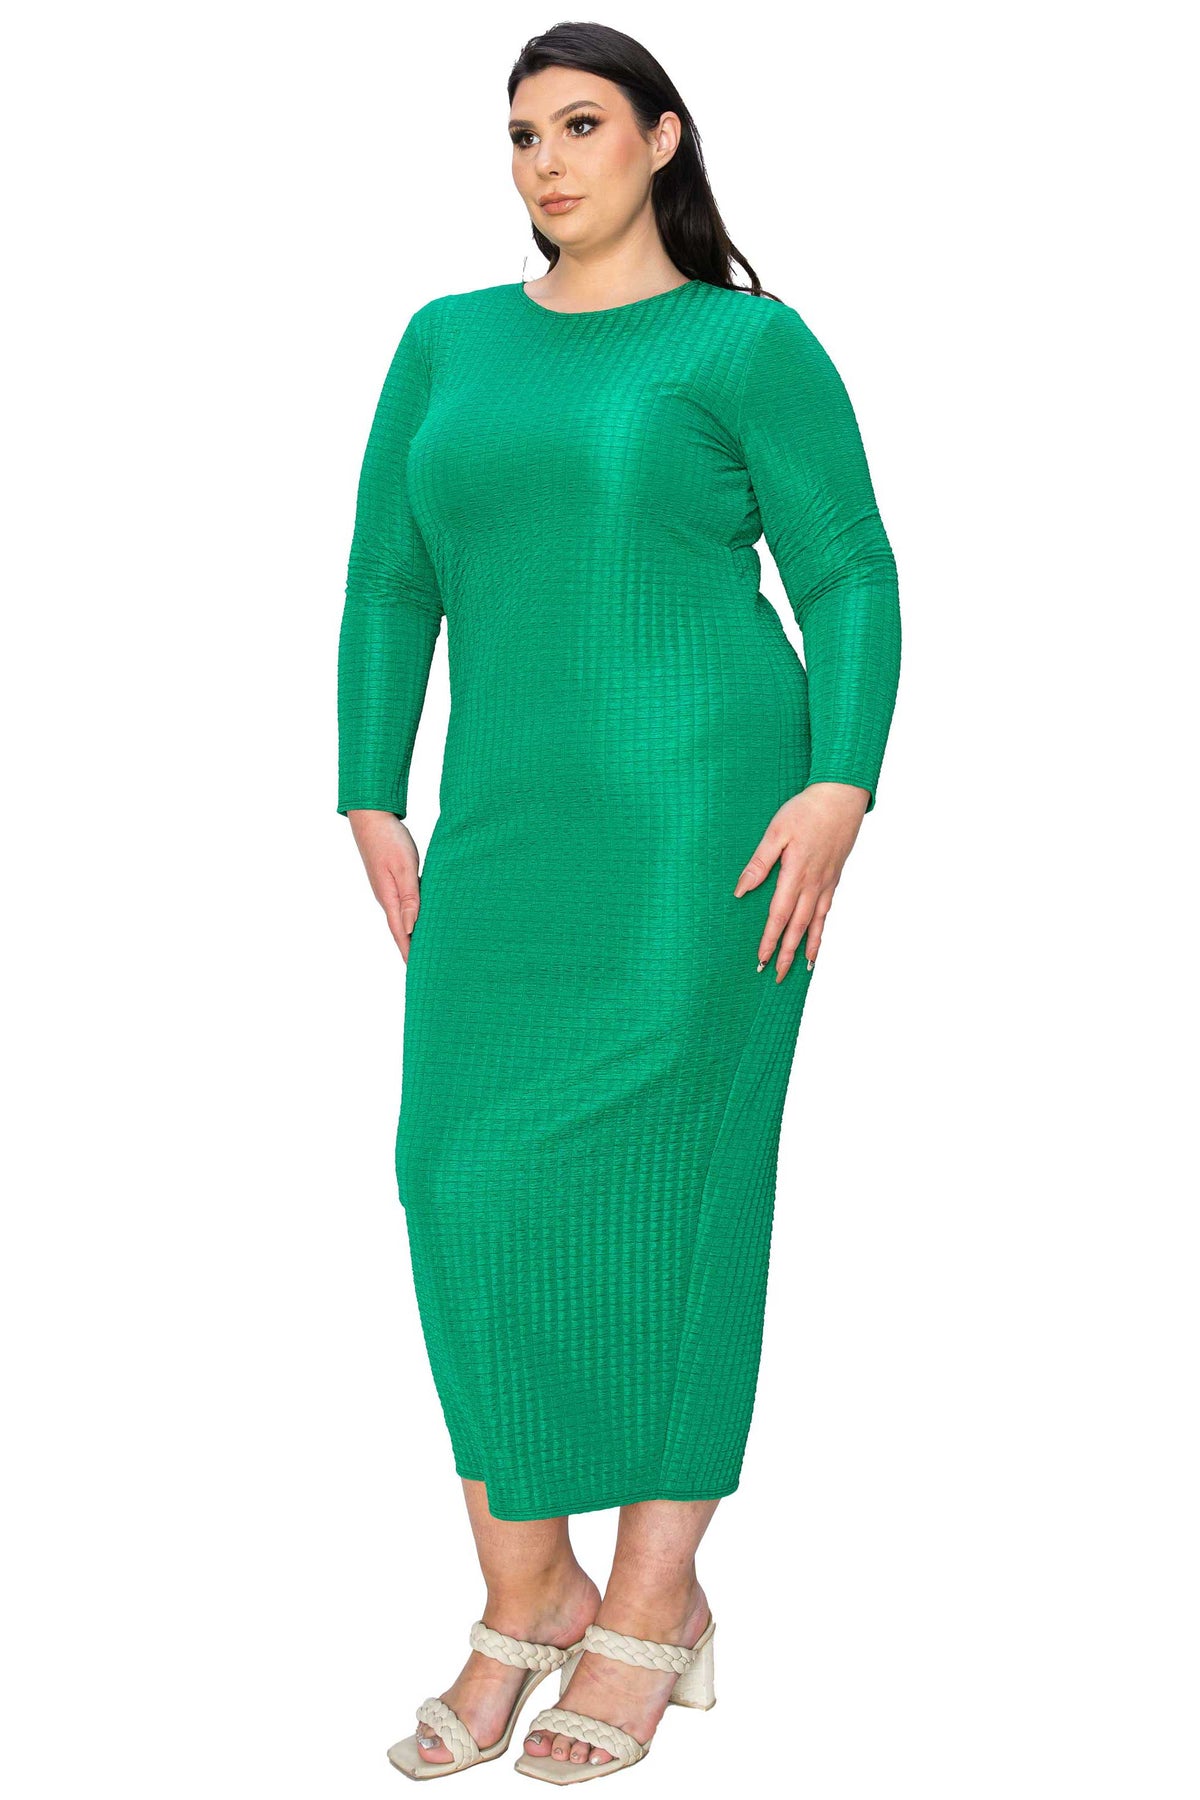 Kylo Textured Bodycon Dress